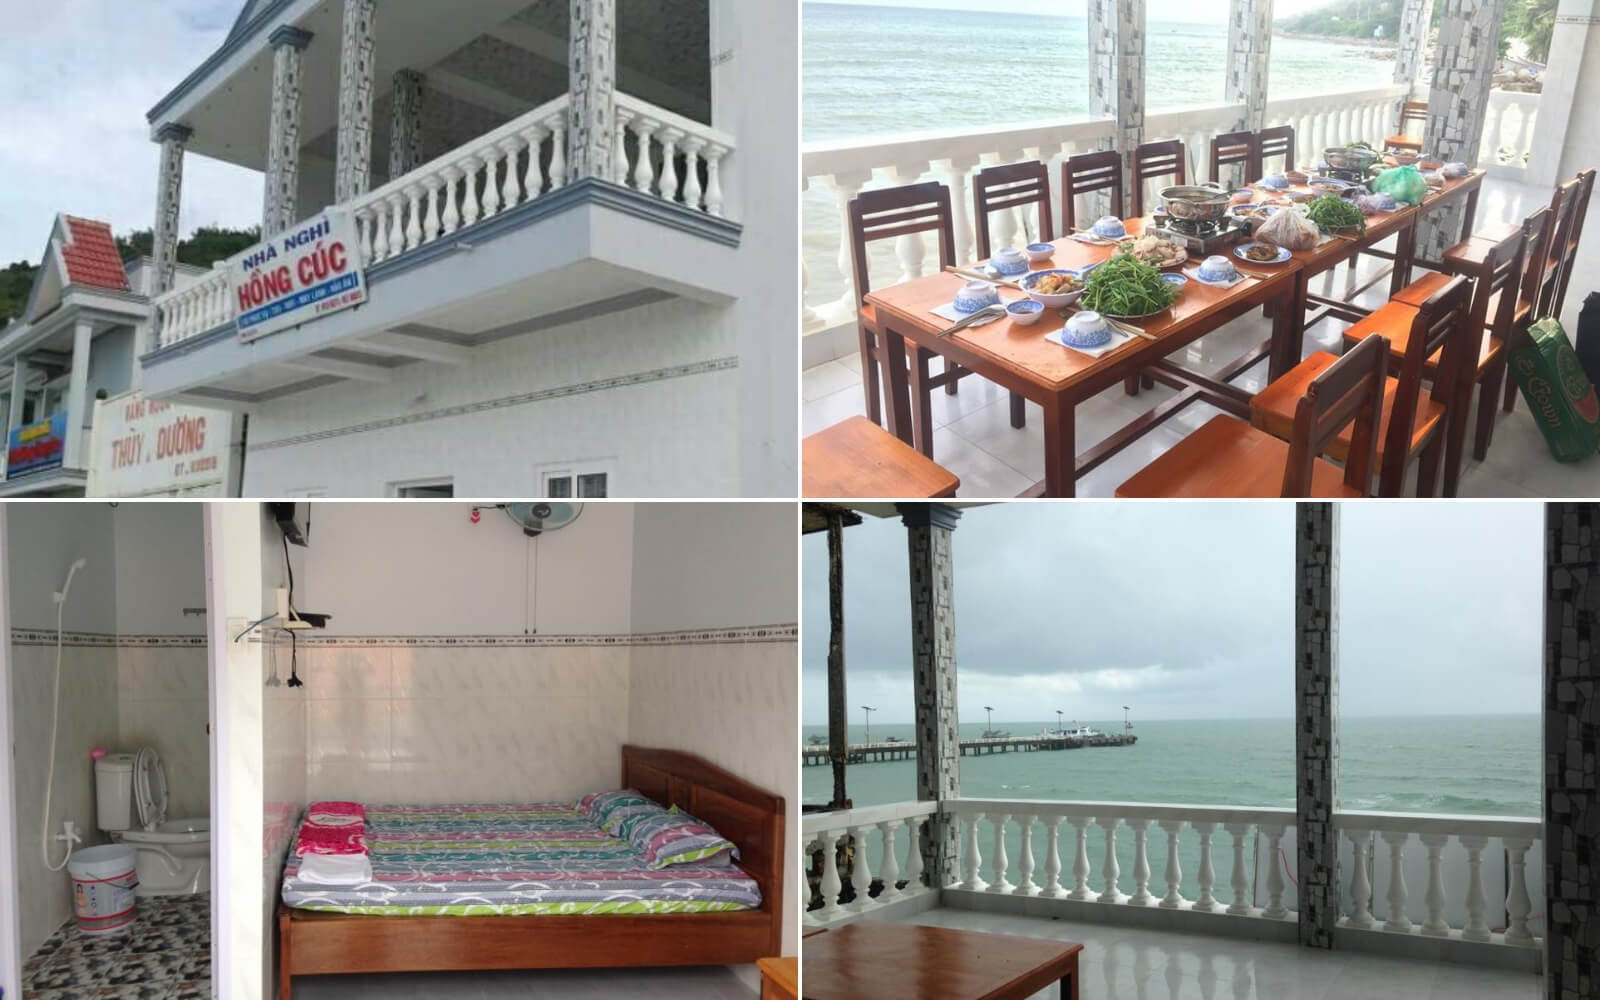 30 Nhà nghỉ homestay Hòn Sơn Kiên Giang giá rẻ gần biển đẹp từ 100k